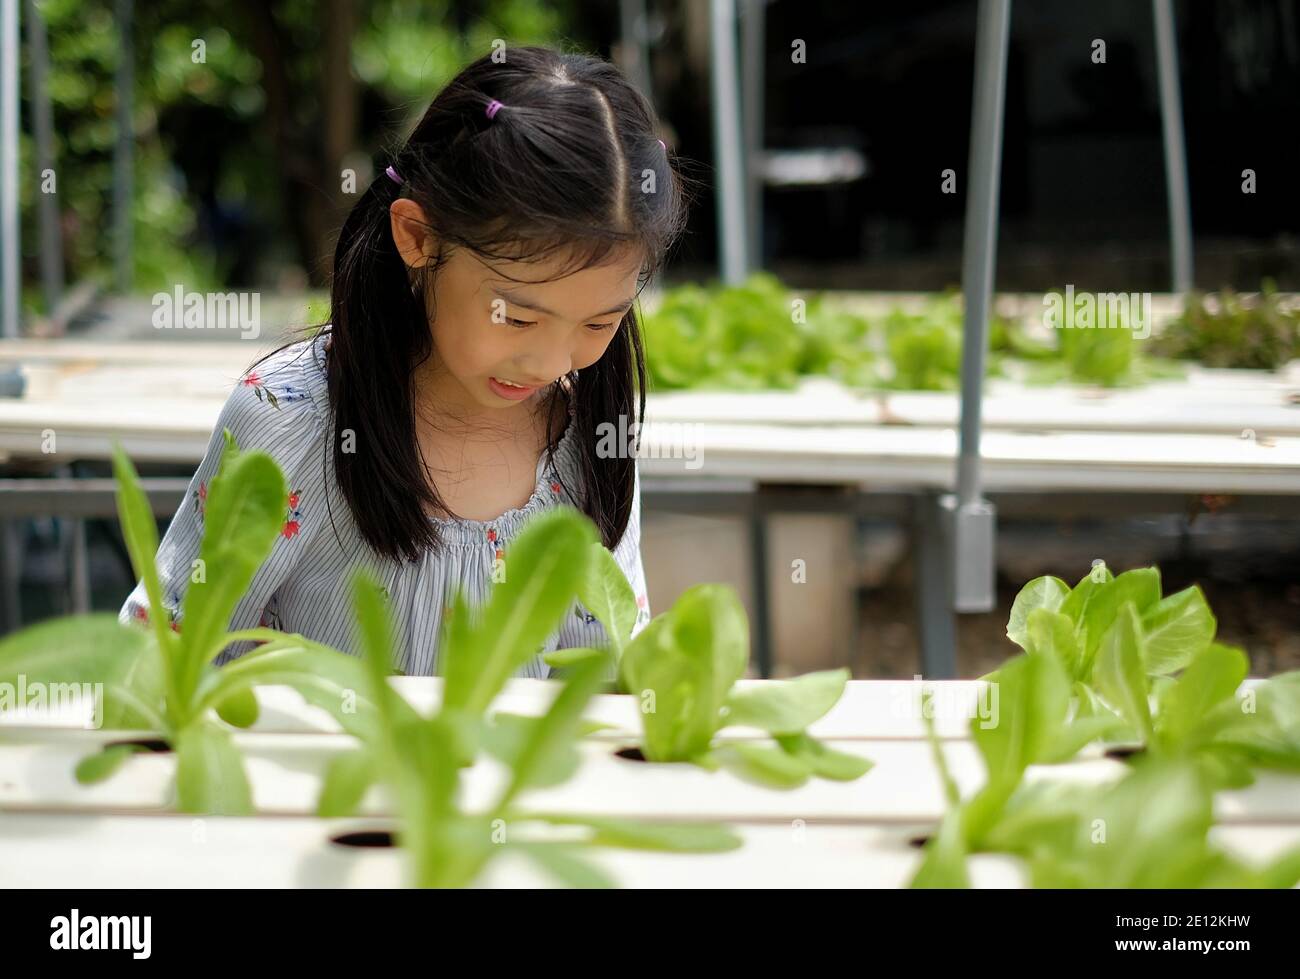 Une jeune fille asiatique mignonne inspectant et s'occupant de son potager hydroponique, se sentant heureuse, souriante. Banque D'Images